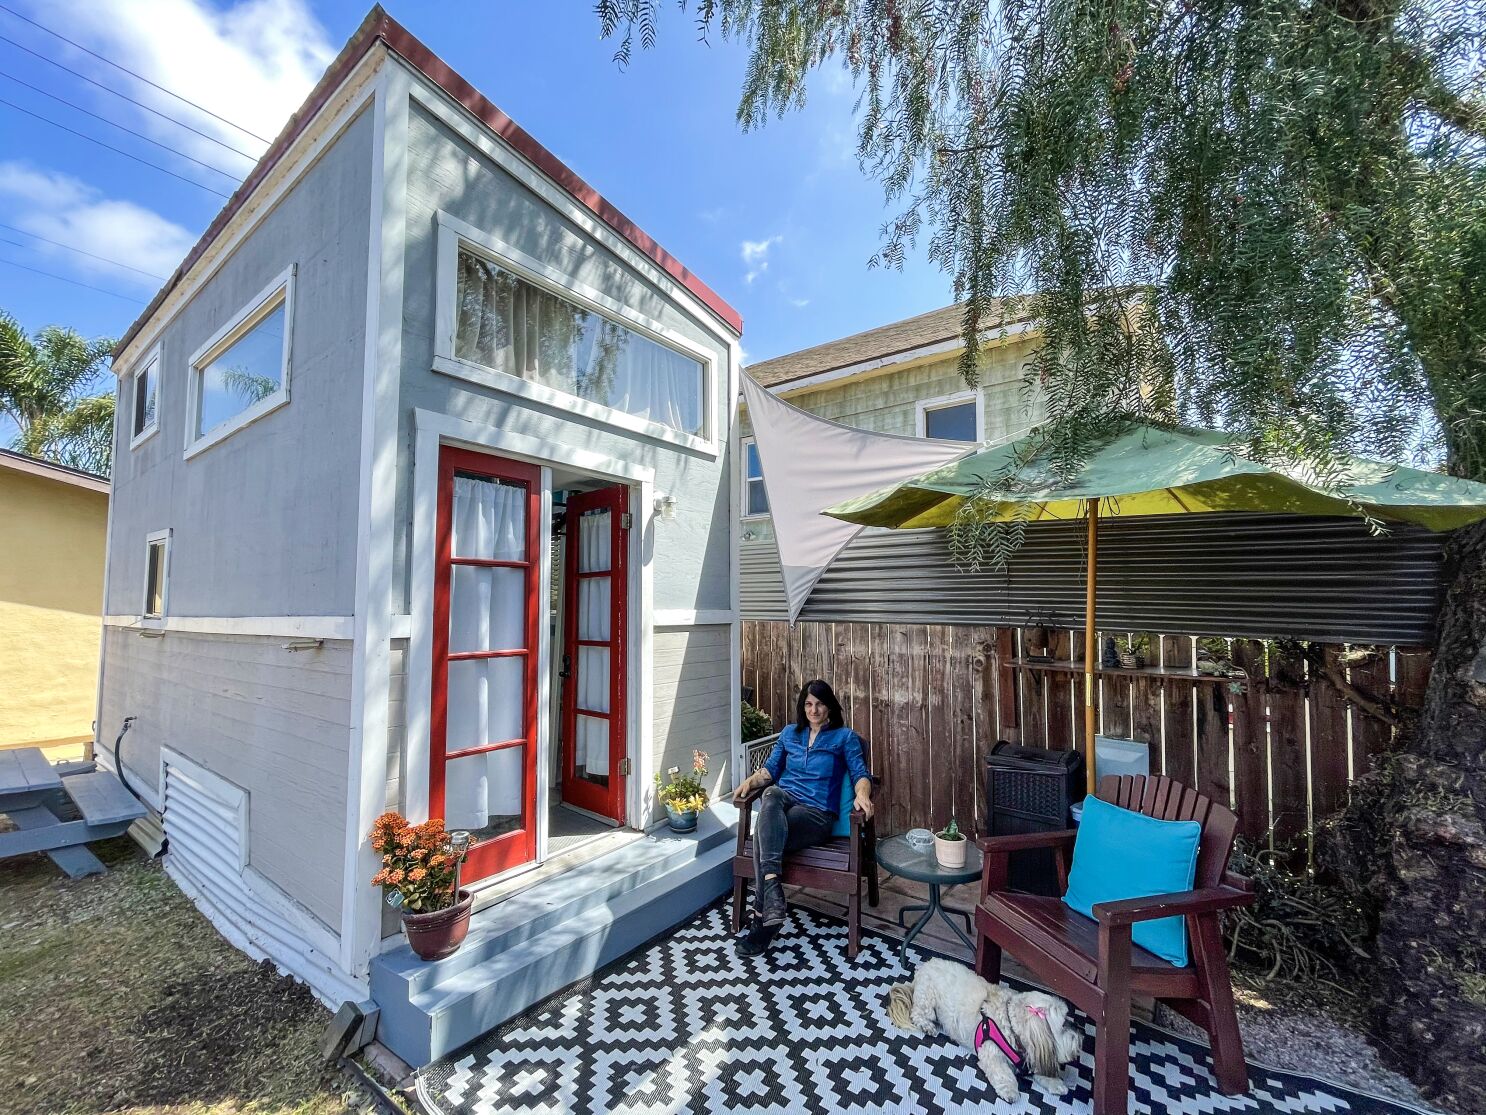 Hospédese en una casa pequeña para sus próximas vacaciones: Aquí tiene 8  que puede alquilar - Los Angeles Times